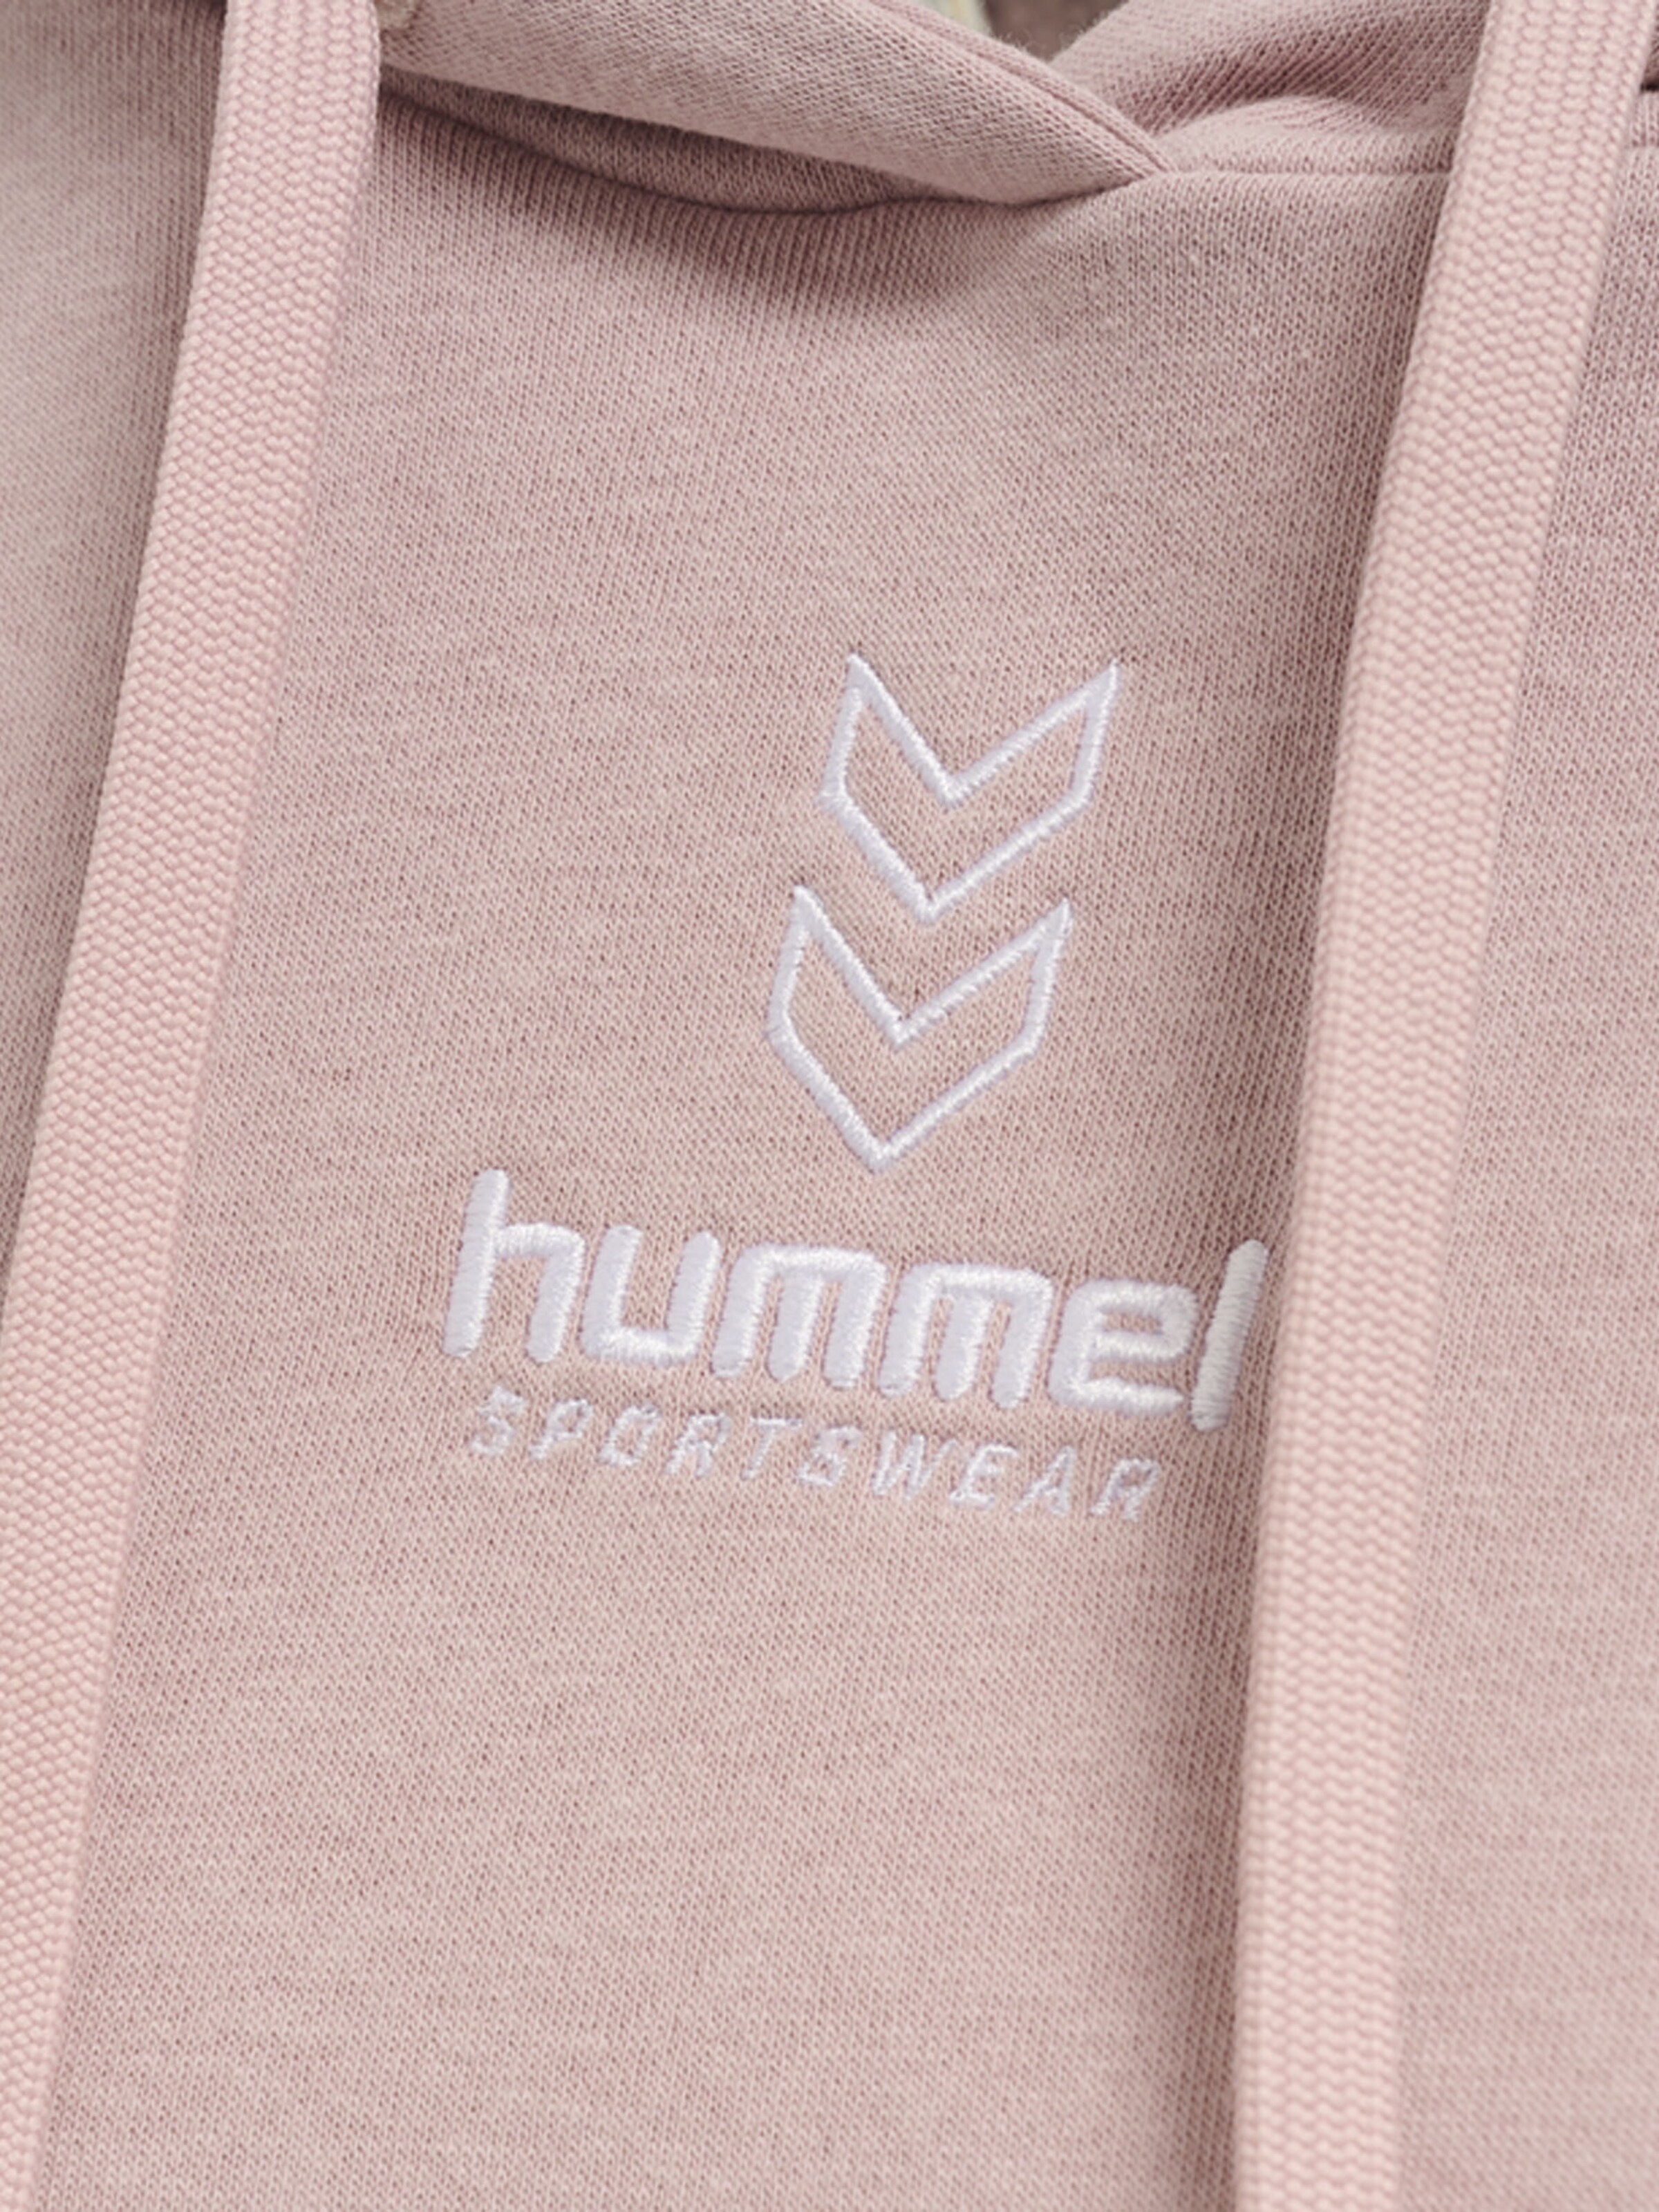 Frauen Sportarten Hummel Sportsweatshirt in Pink - AL12155